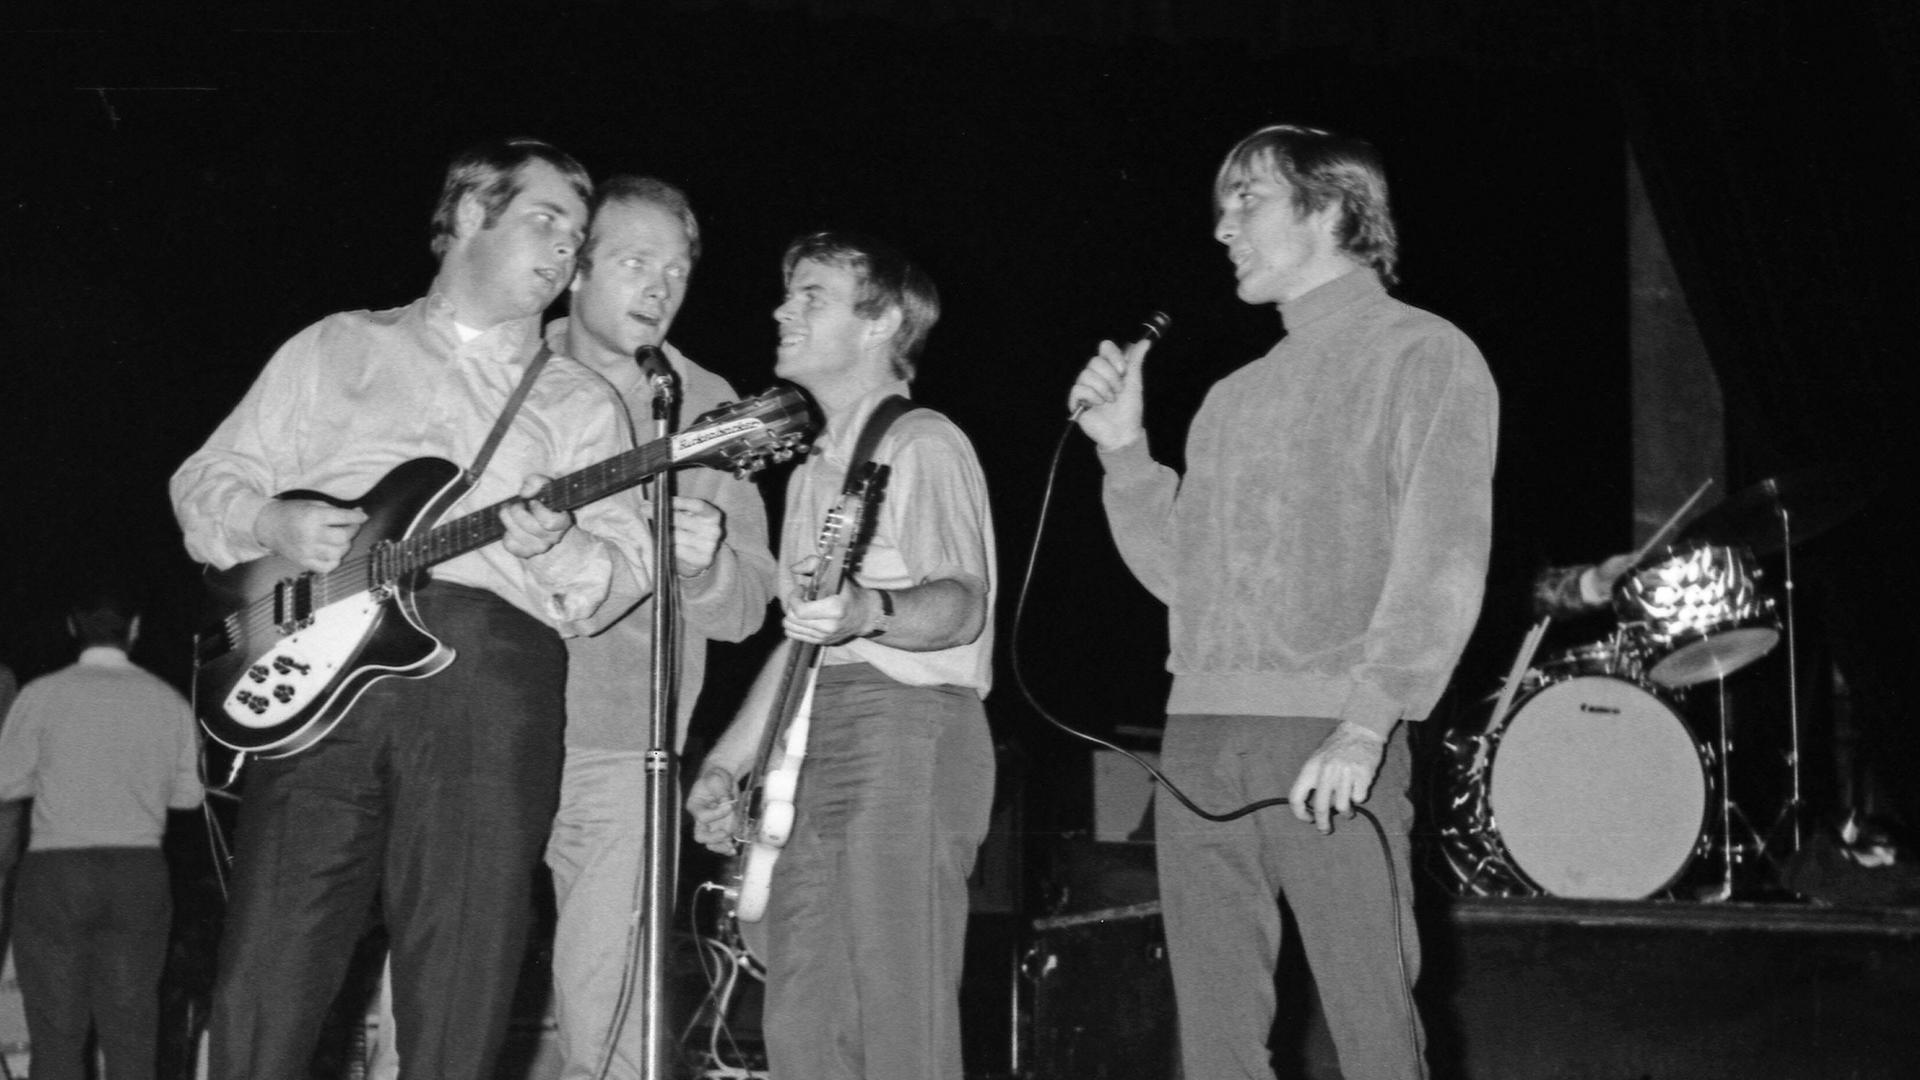 Schwarz-Weiß-Bild von einem Konzert der Band "The Beach Boys" im Jahr 1964 in Paris: Brian Wilson, Mike Love, Al Jardine, Dennis Wilson stehen auf der Bühne dicht beisammen um ein Mikro, Brian Wilson spielt Gitarre.